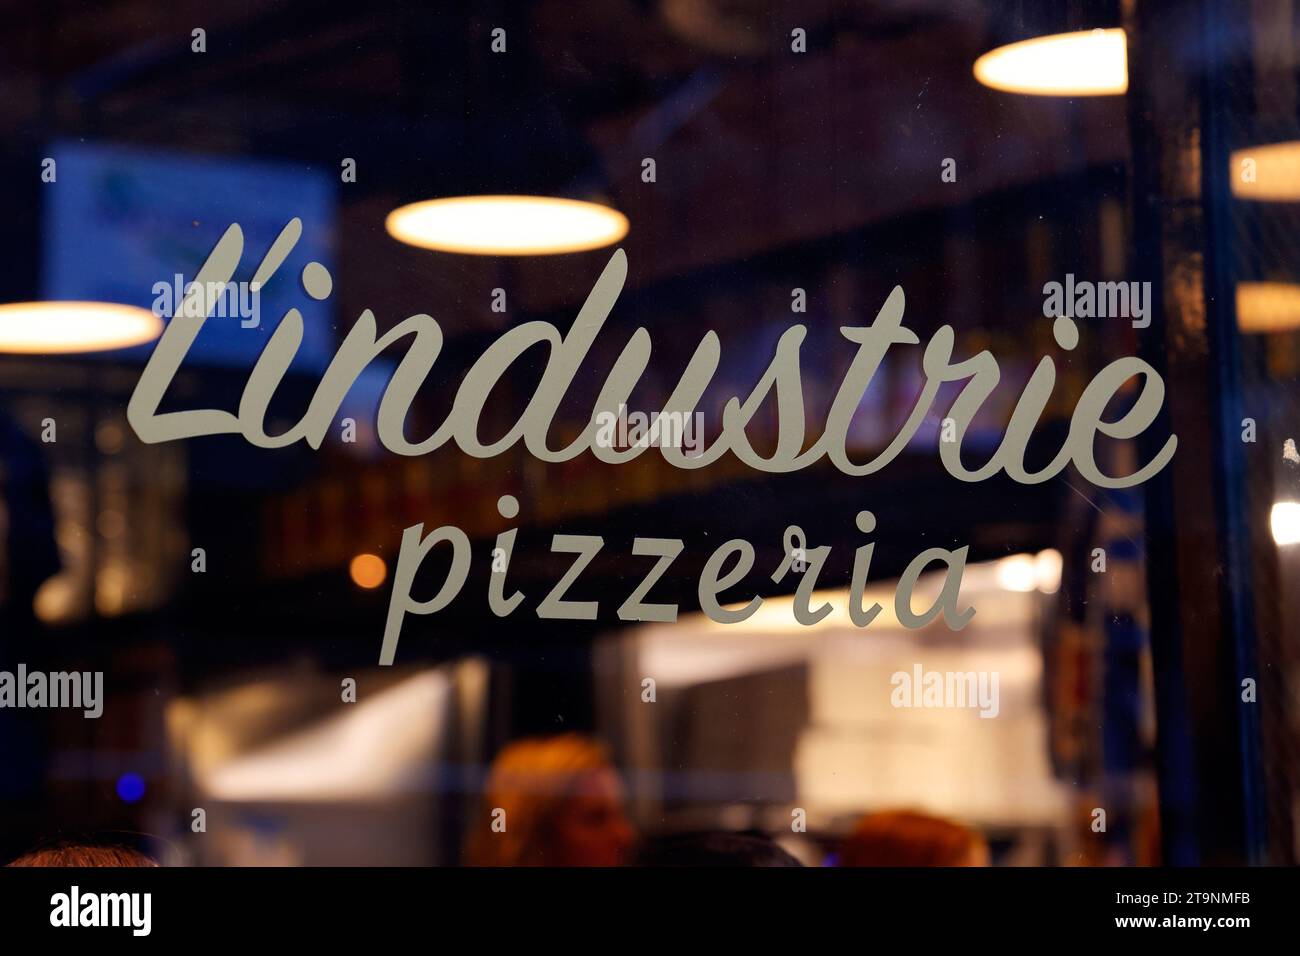 Signalisation pour l'industrie Pizzeria, 104 Christopher St, New York, NYC dans le Greenwich Village de Manhattan. Banque D'Images